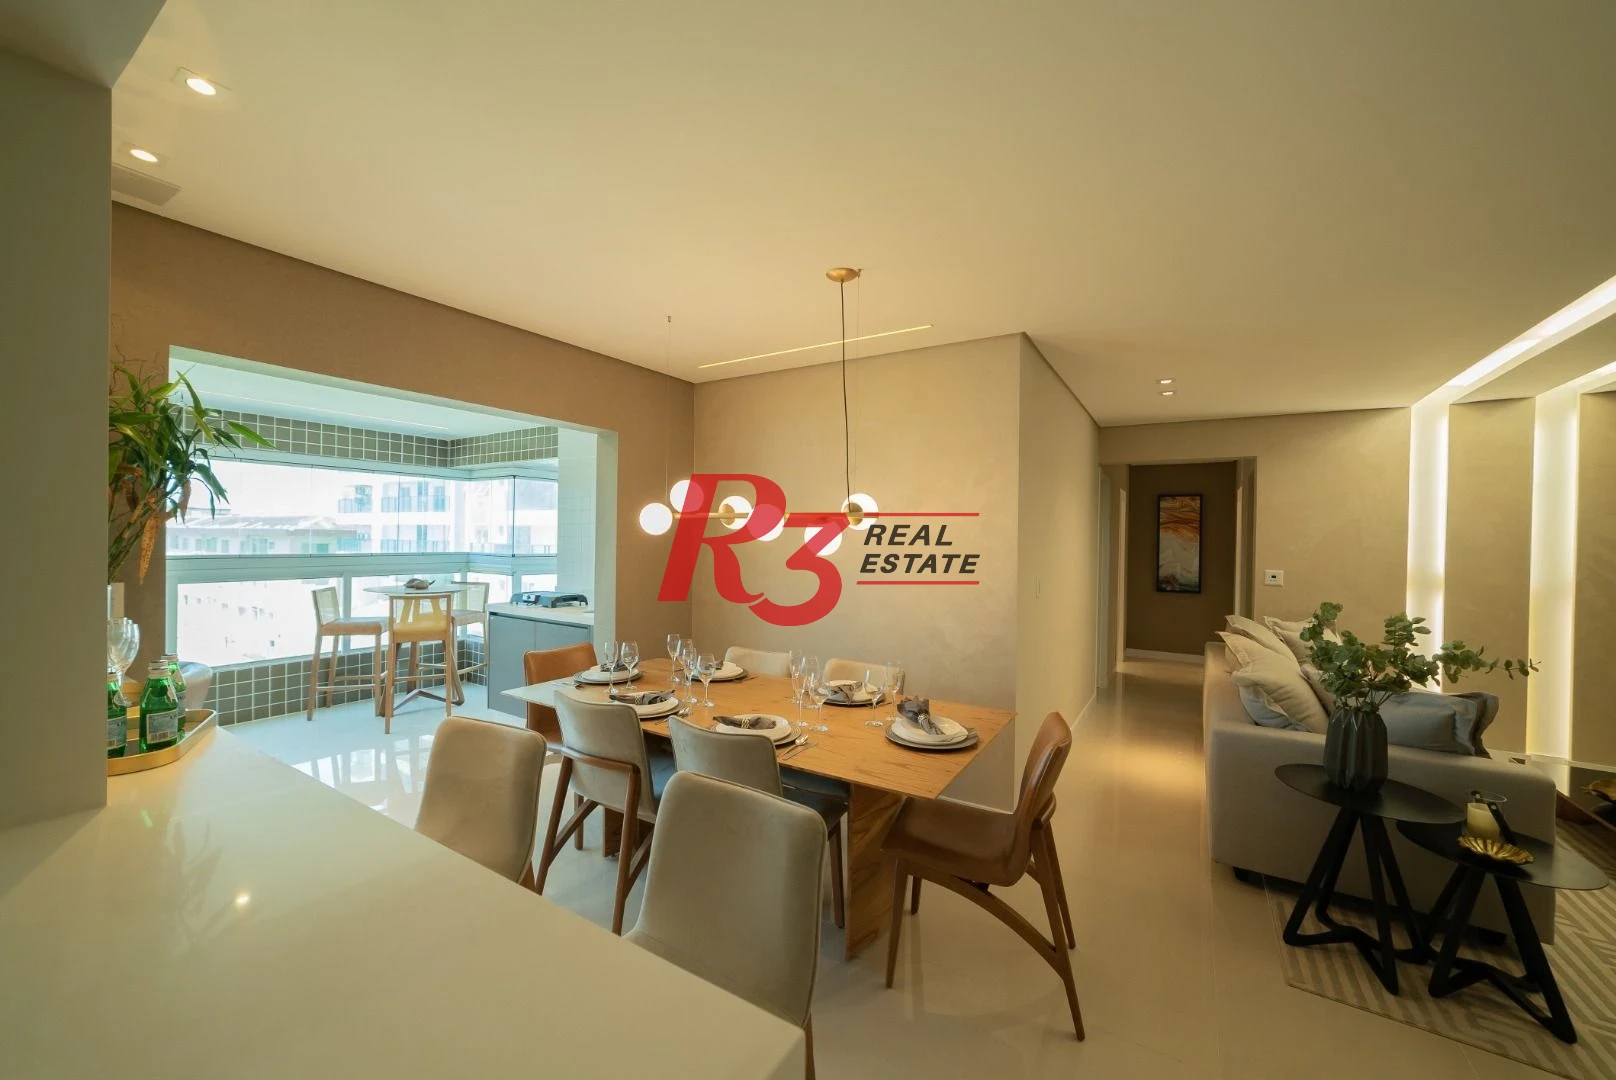 Apartamento com 3 dormitórios à venda, 117 m² por R$ 910.000  no  Boqueirão em Praia Grande/SP